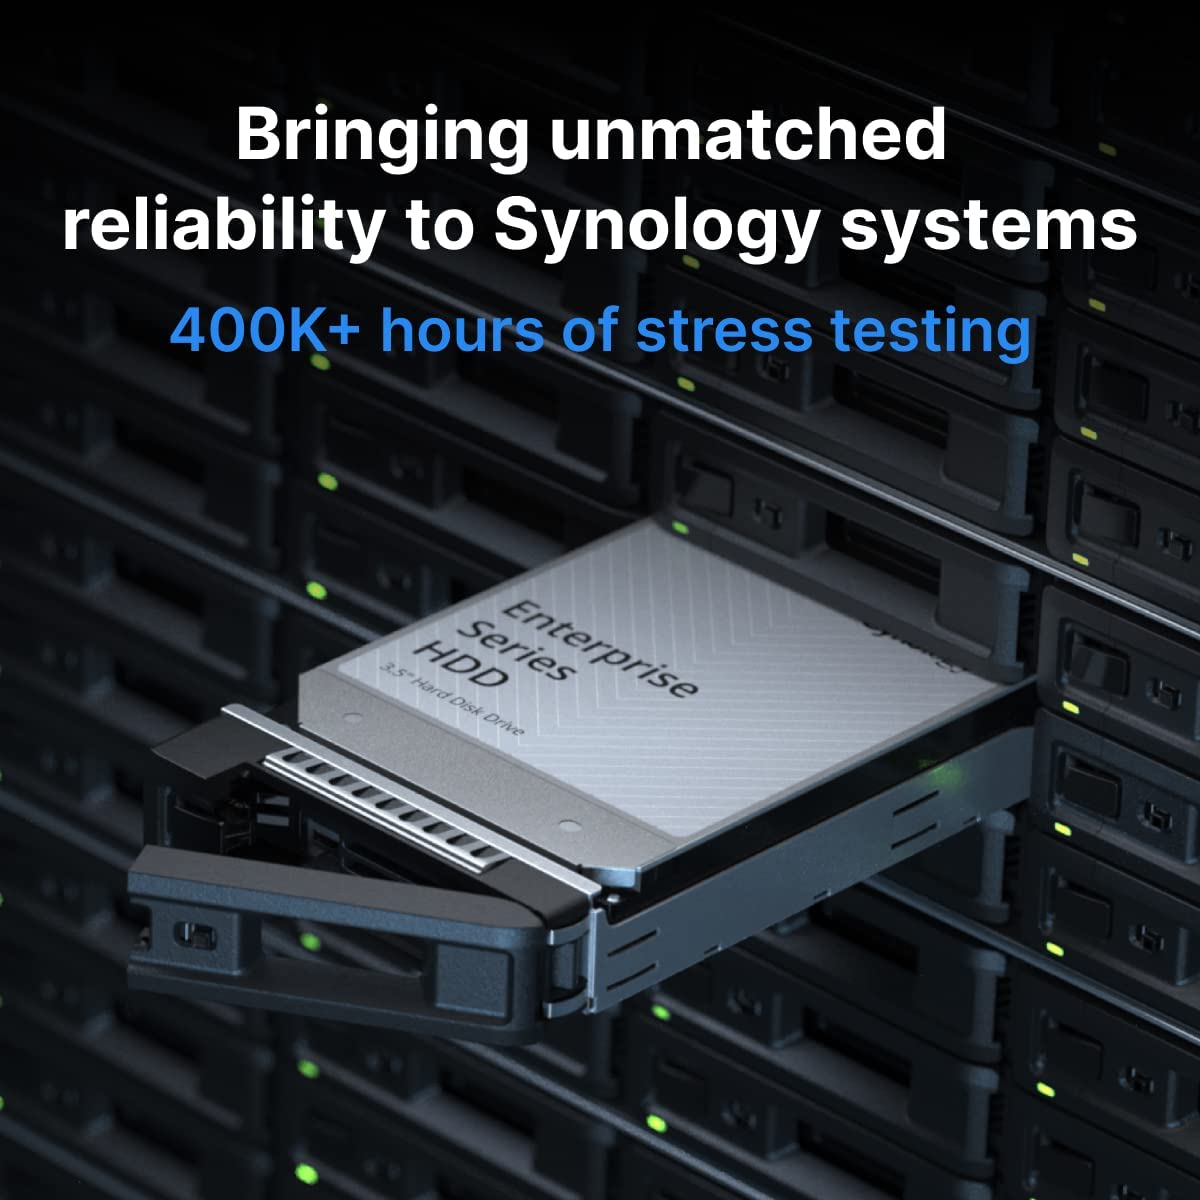 هارد اینترنال سینولوژی مدل Synology Enterprise 3.5 18TB - ارسال 215 الی 20 روز کاری